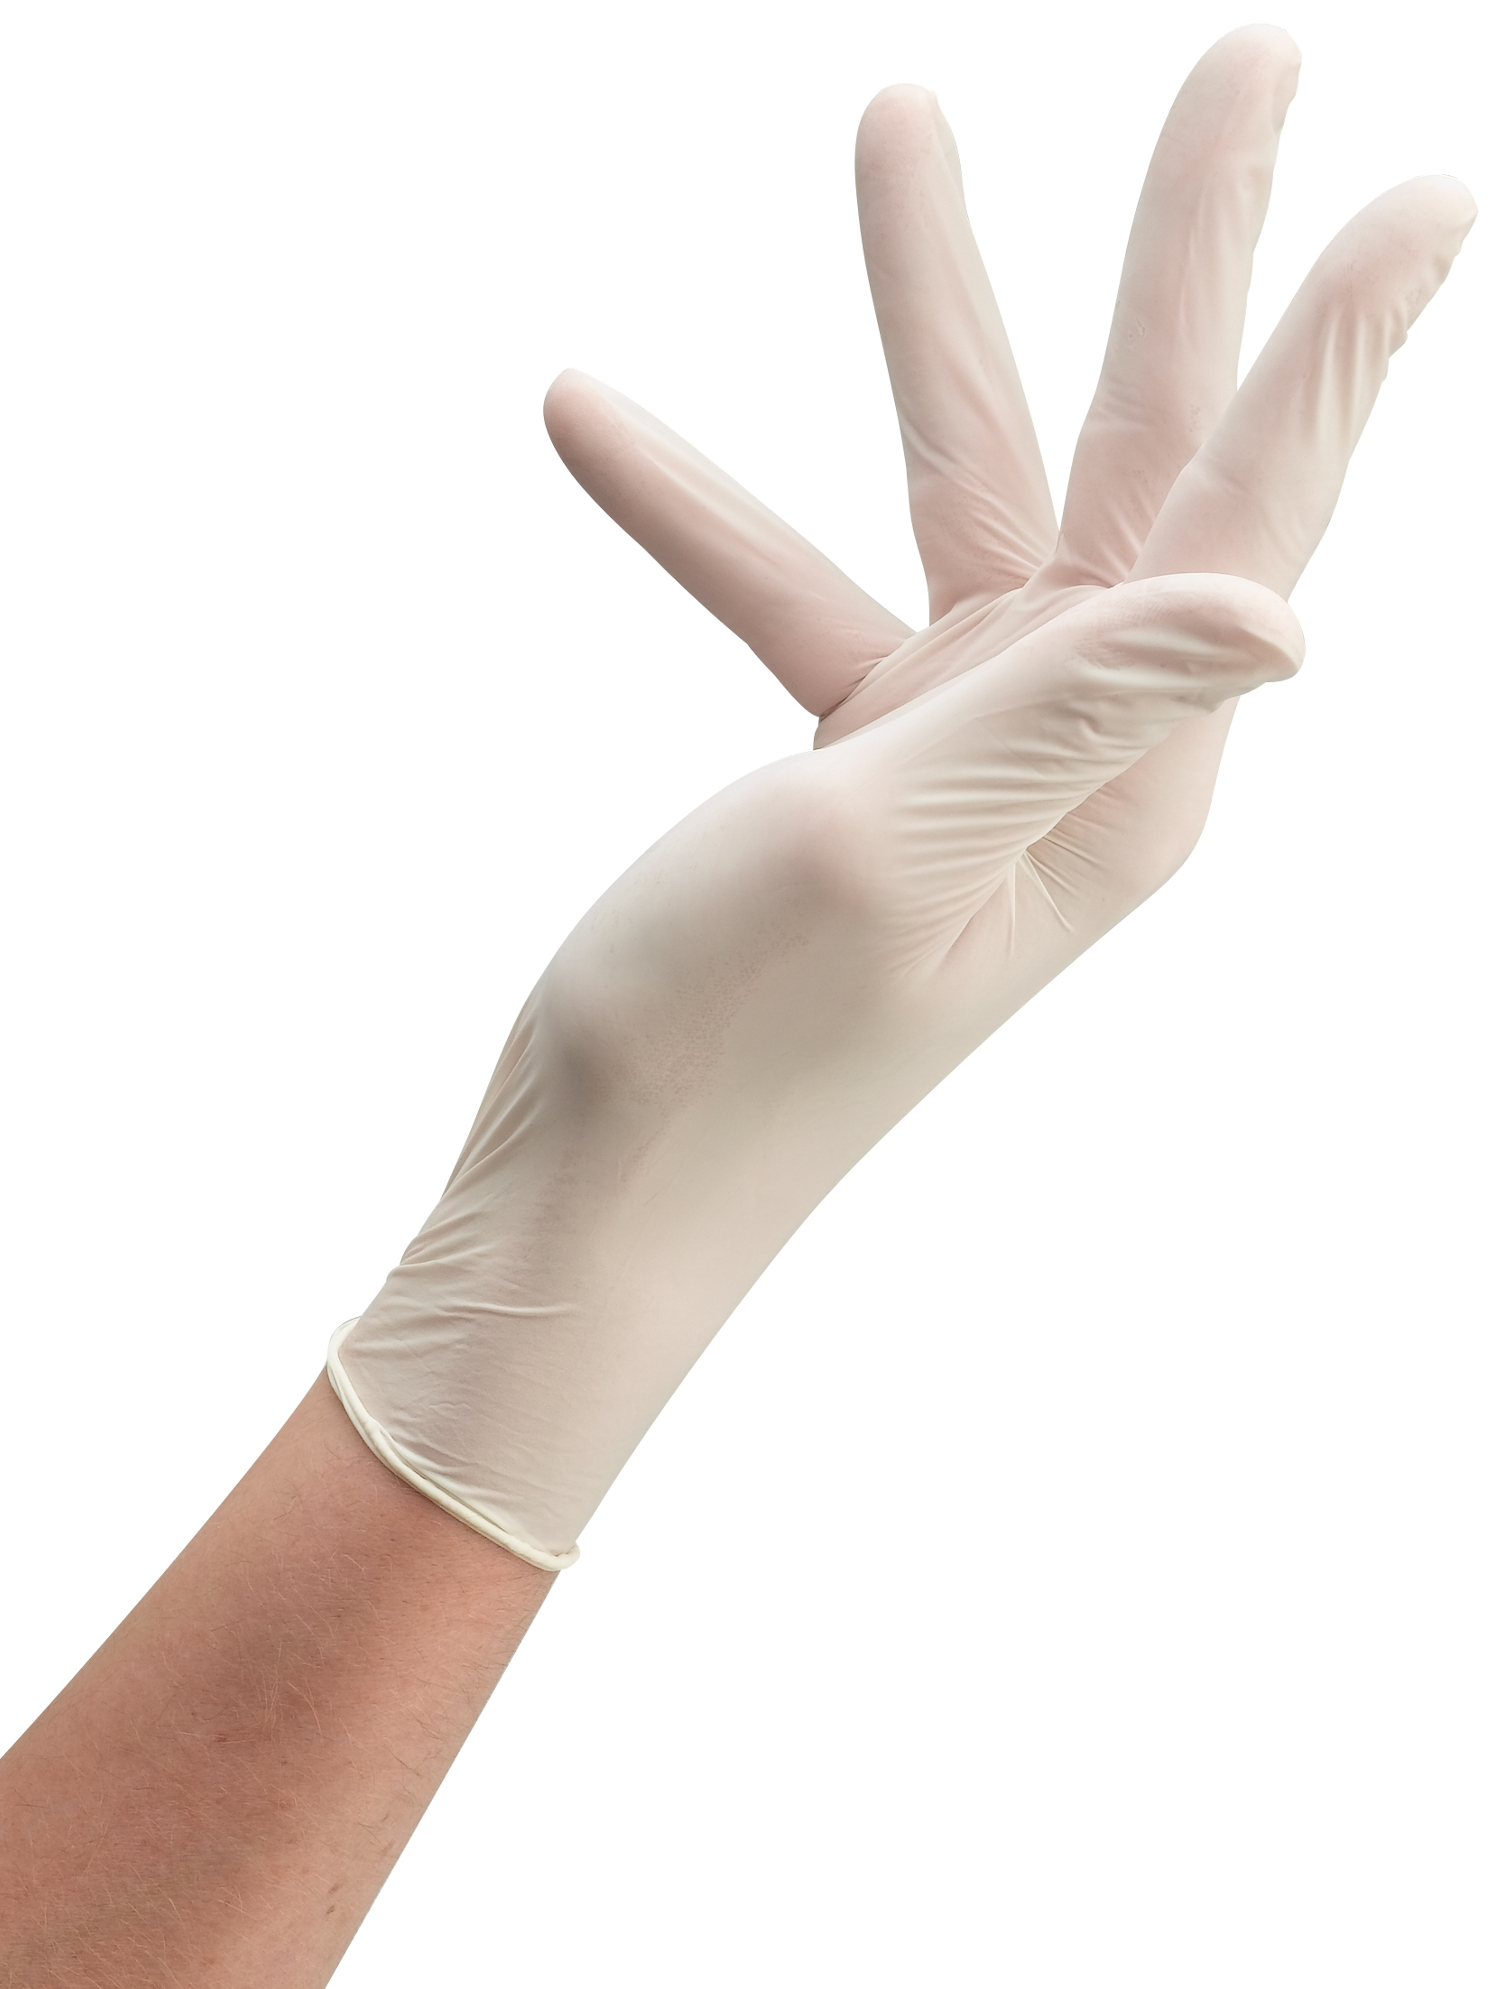 Latexové rukavice pro kadeřníky Sibel Clean All 100 ks - bílé velikosti M (093200155) + dárek zdarma